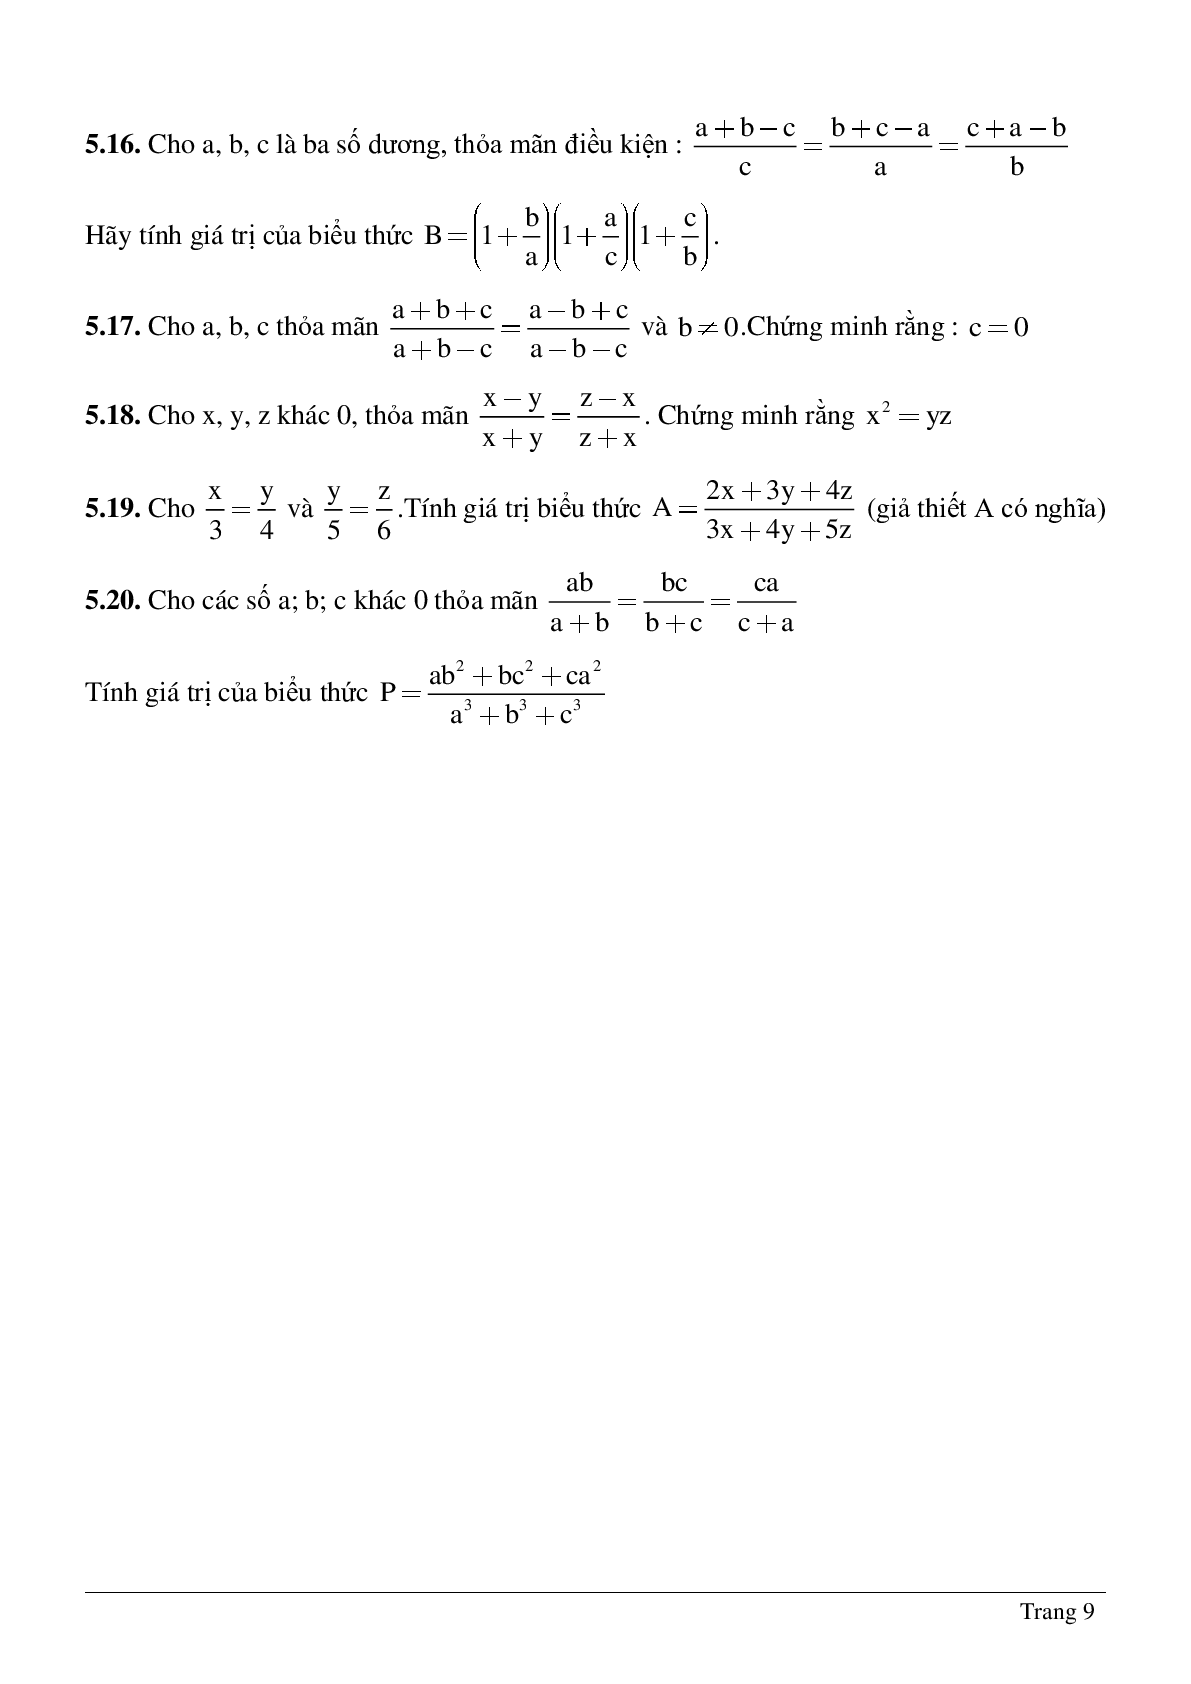 Bài tập chọn lọc về Tỉ lệ thức - Tính chất của dãy tỉ số bằng nhau có lời giải (trang 9)